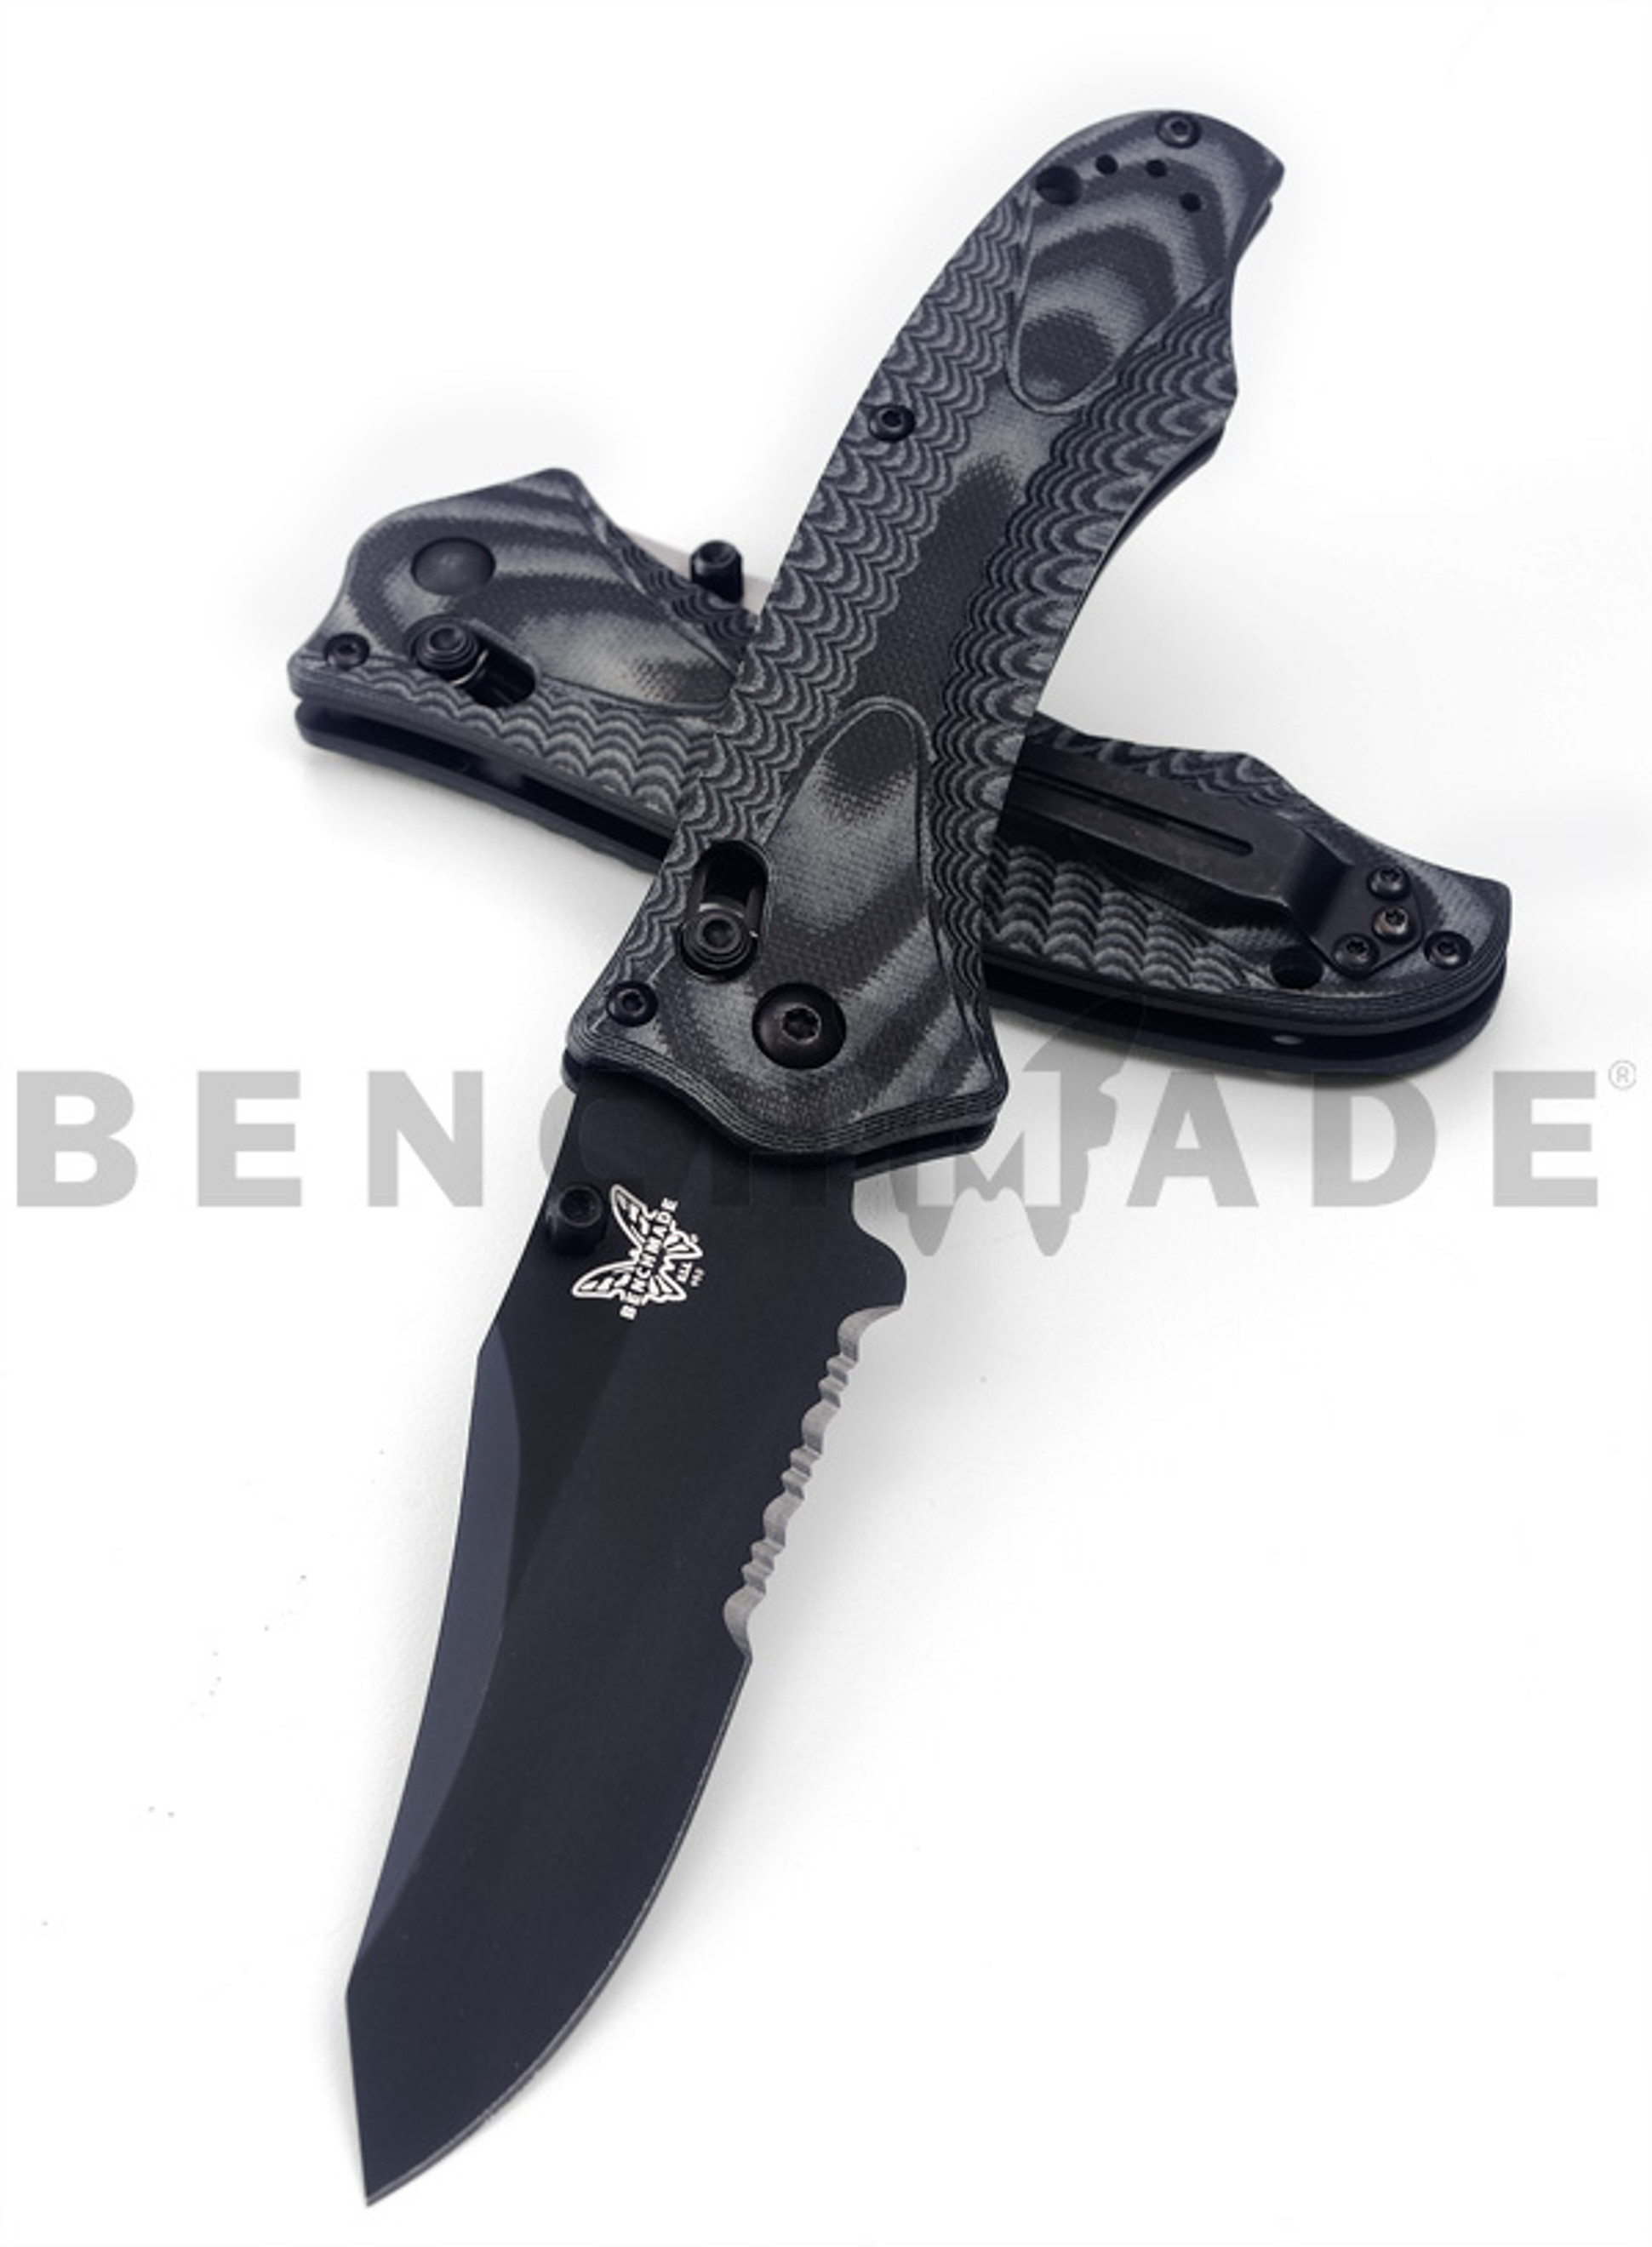 Benchmade 950SBK Rift Black ComboEdge